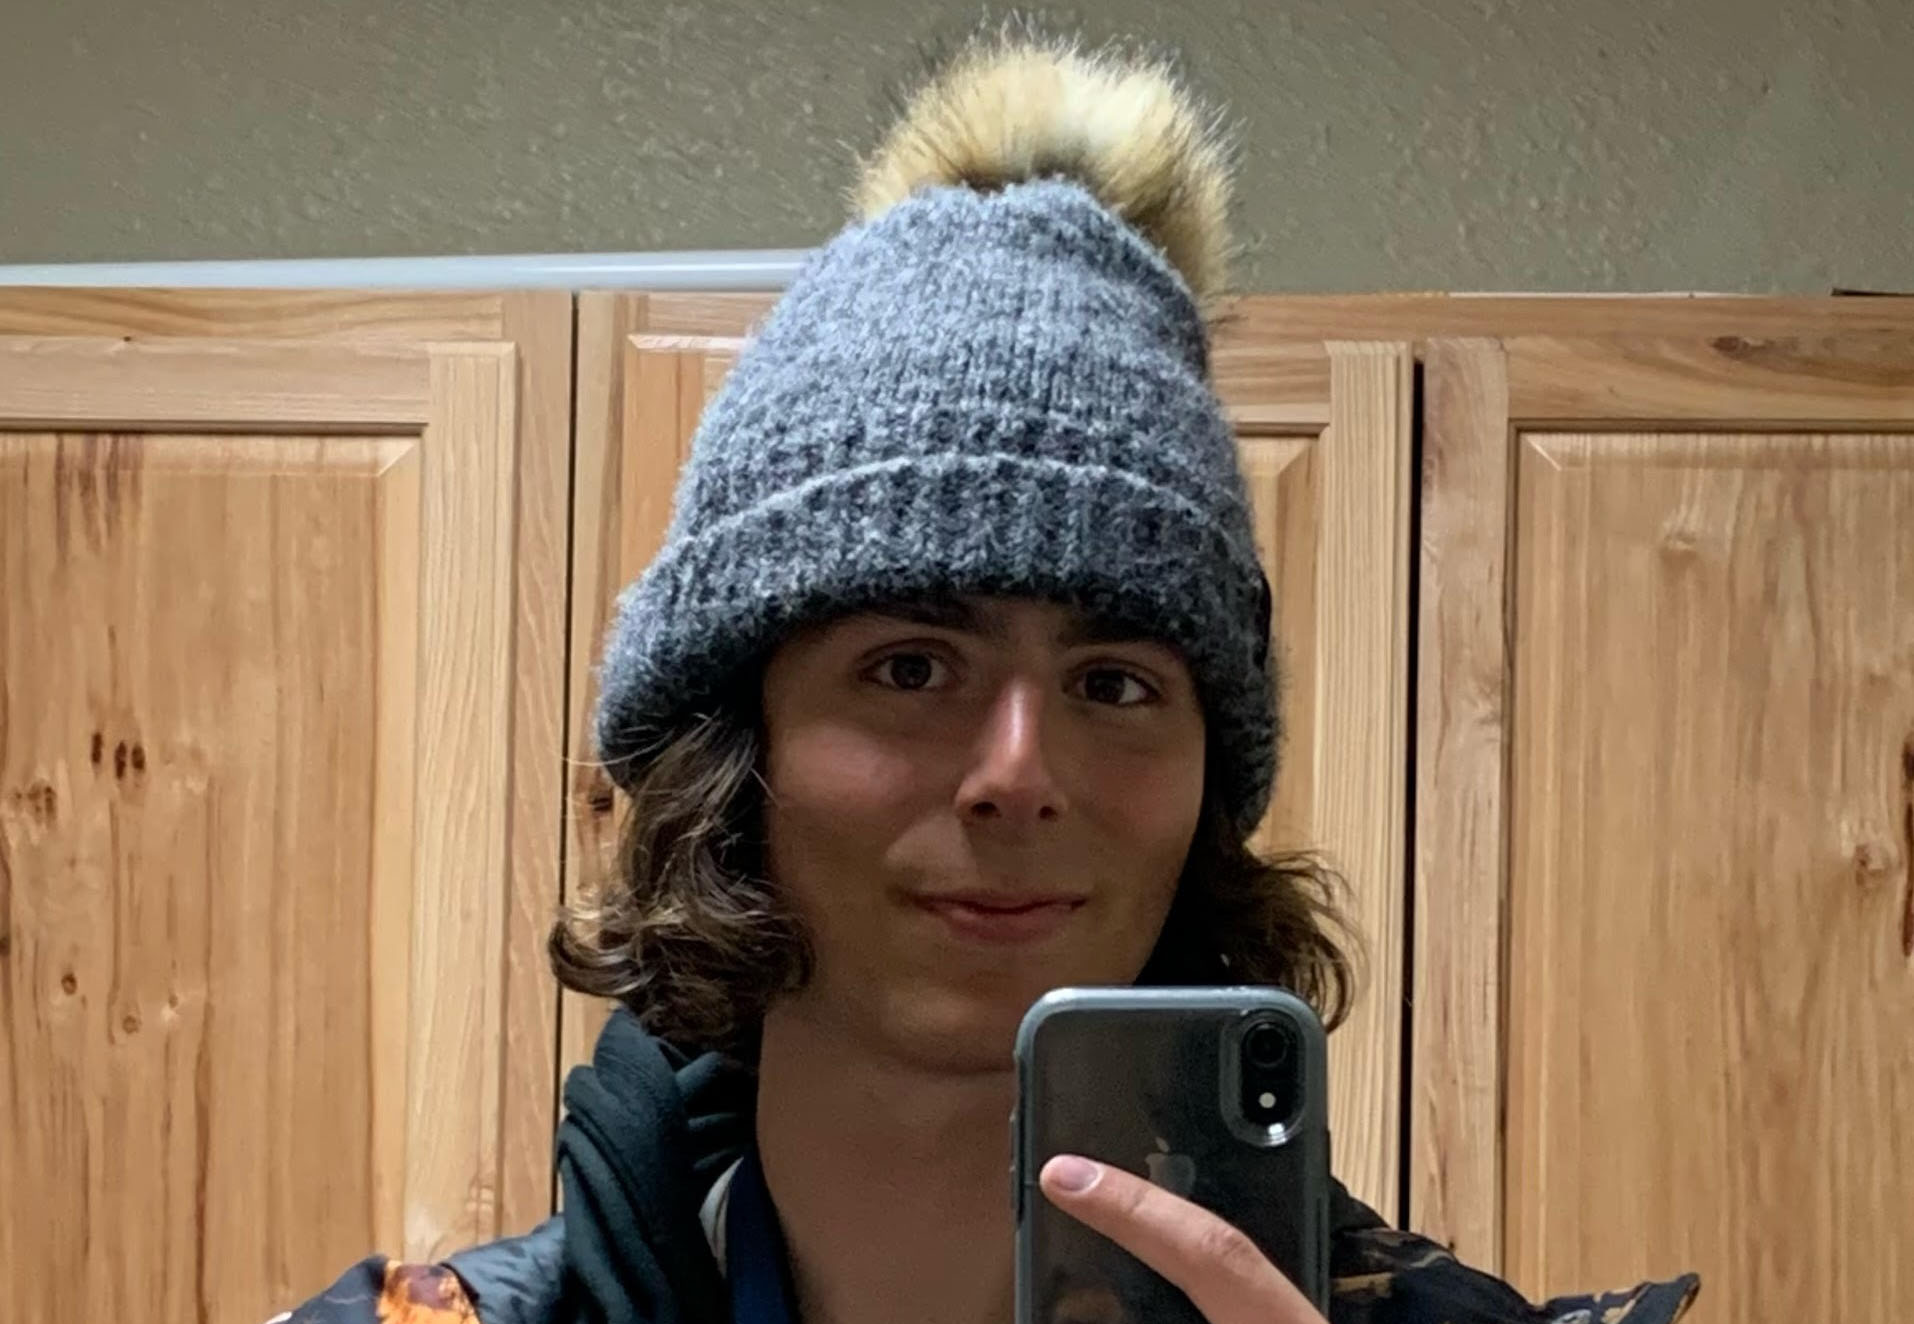 Jonah Calvo takes a mirror selfie wearing a winter hat